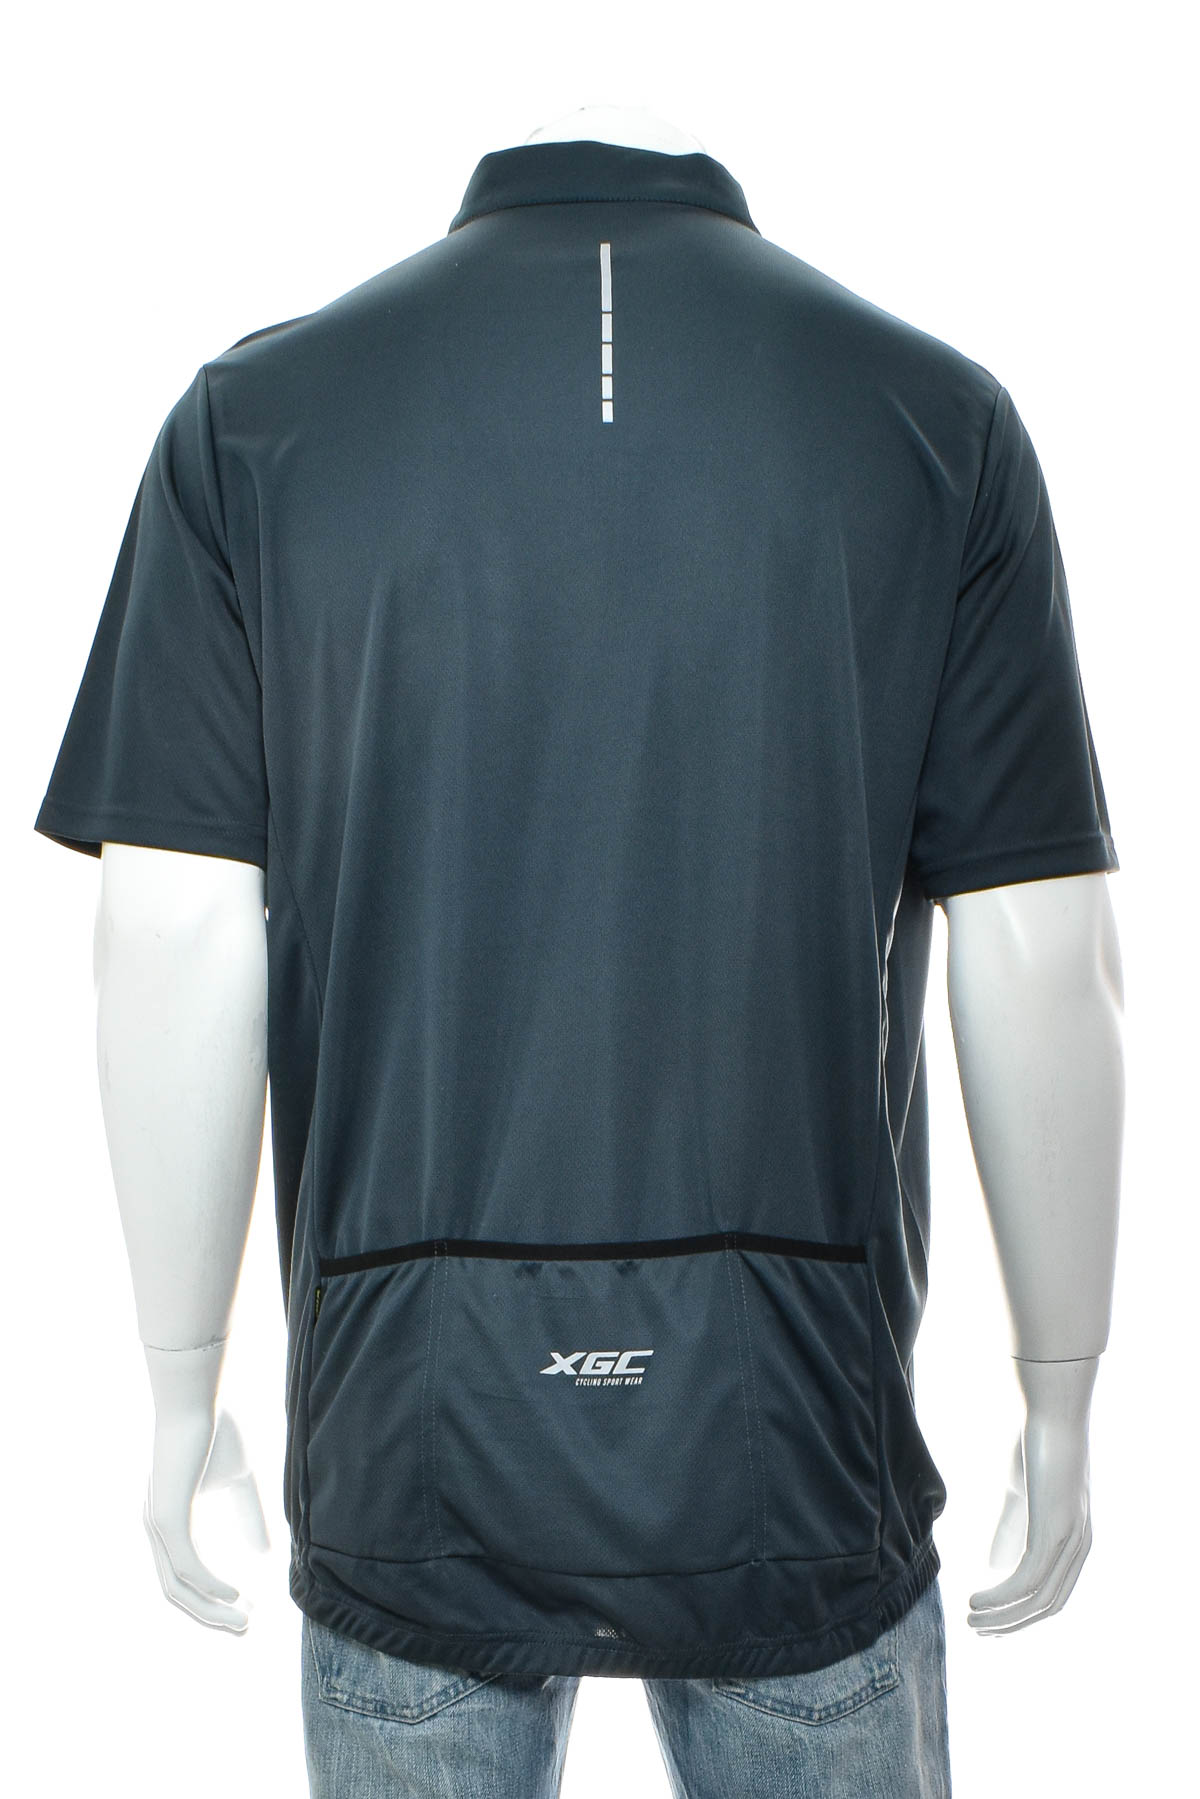 Αντρική μπλούζα Για ποδηλασία - XGC - 1